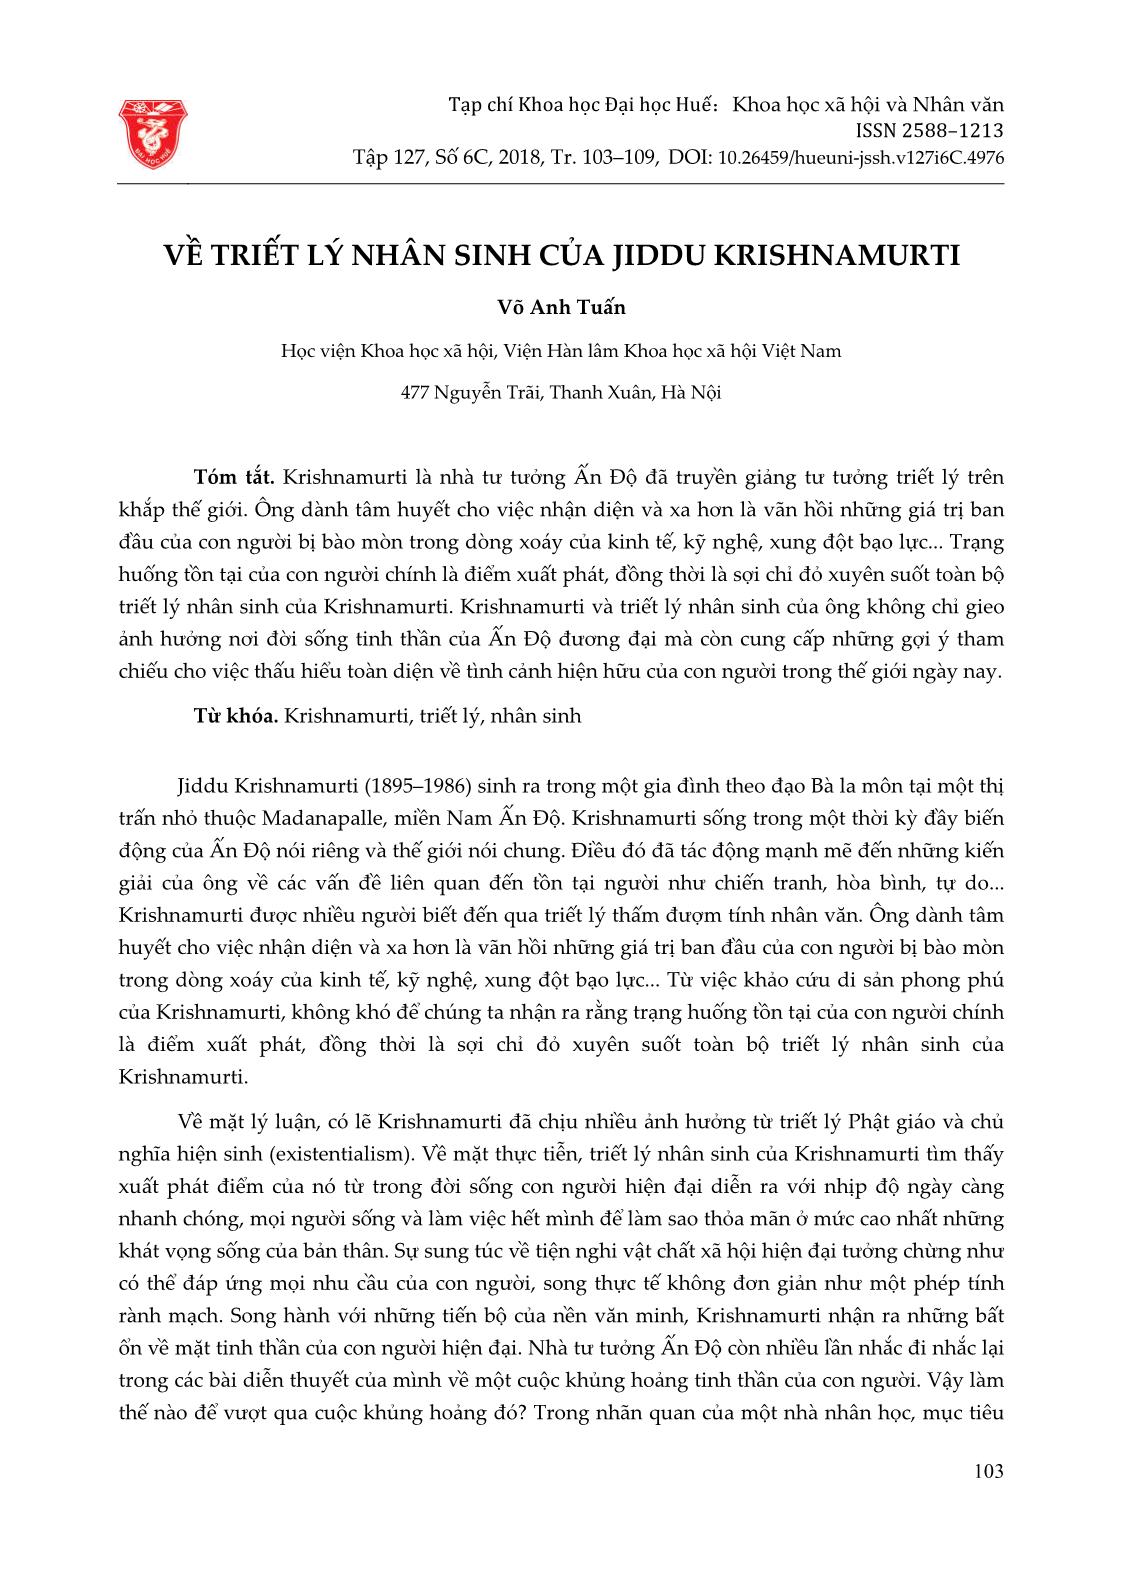 Về triết lý nhân sinh của Jiddu Krishnamurti trang 1